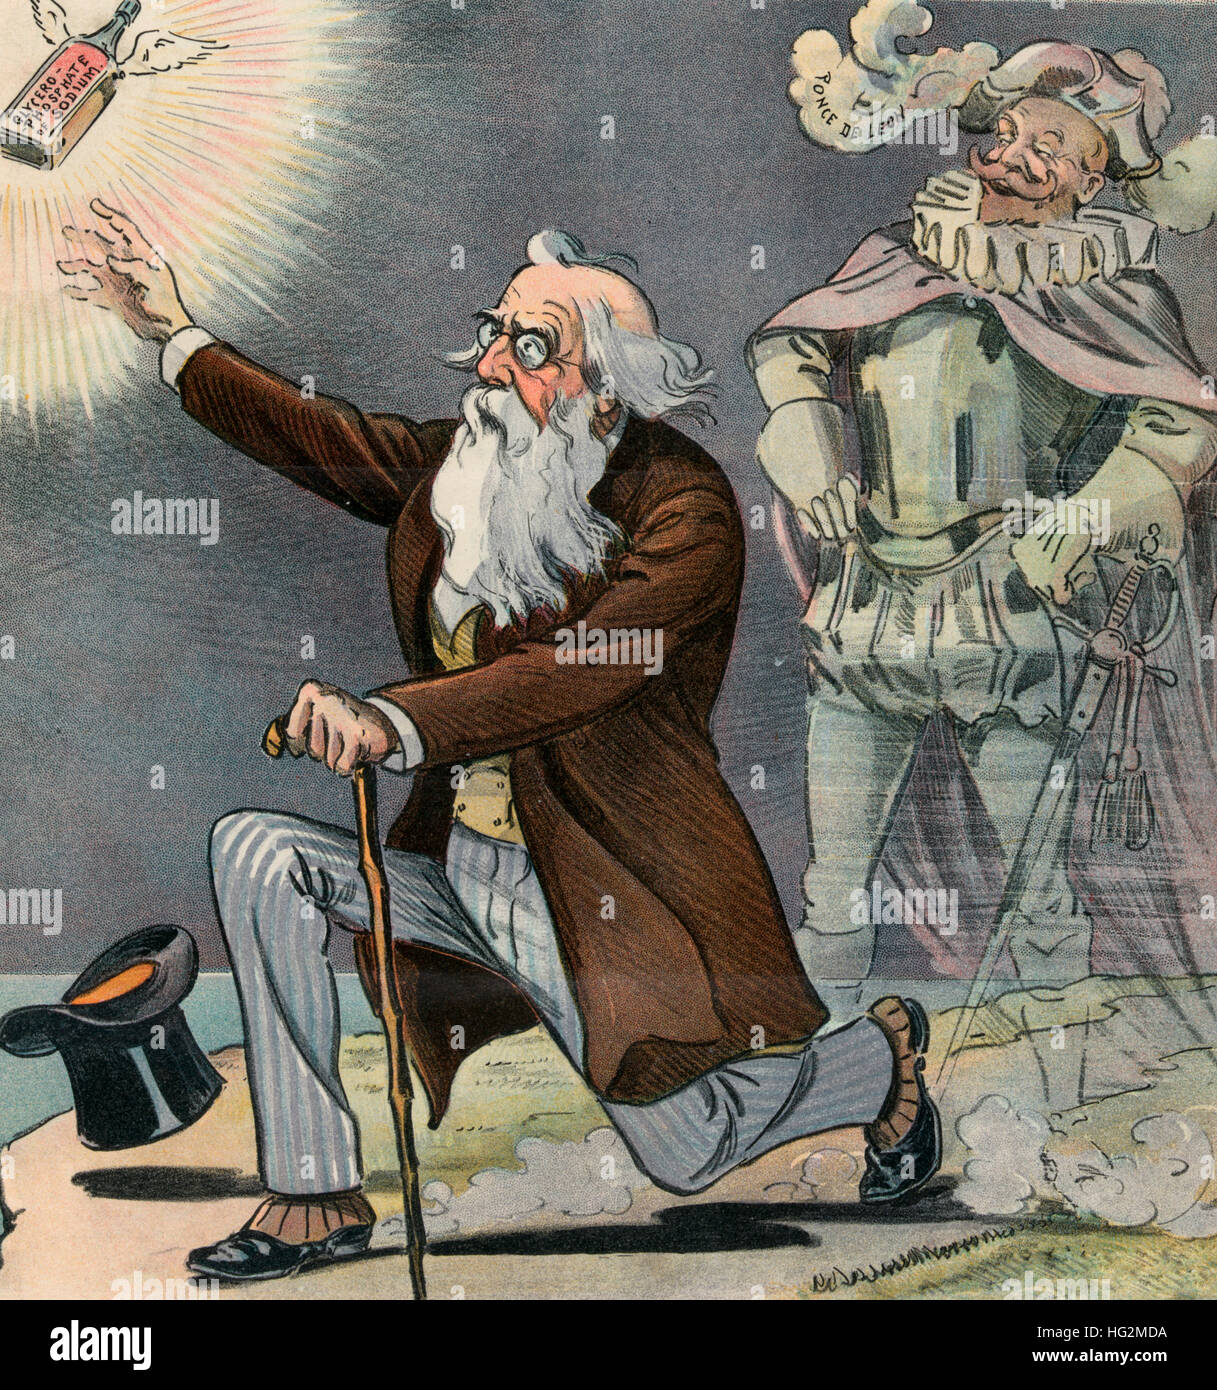 Jungbrunnen - die endlose Suche - Abbildung zeigt einen alten Mann für eine Flasche "Glycero-Phosphat Natrium" zu erreichen, eine Patent-Medizin, die scheinbar Jugendlichkeit, stellt ältere Personen. Der Geist von Juan Ponce de León steht im Hintergrund lachen. Stockfoto